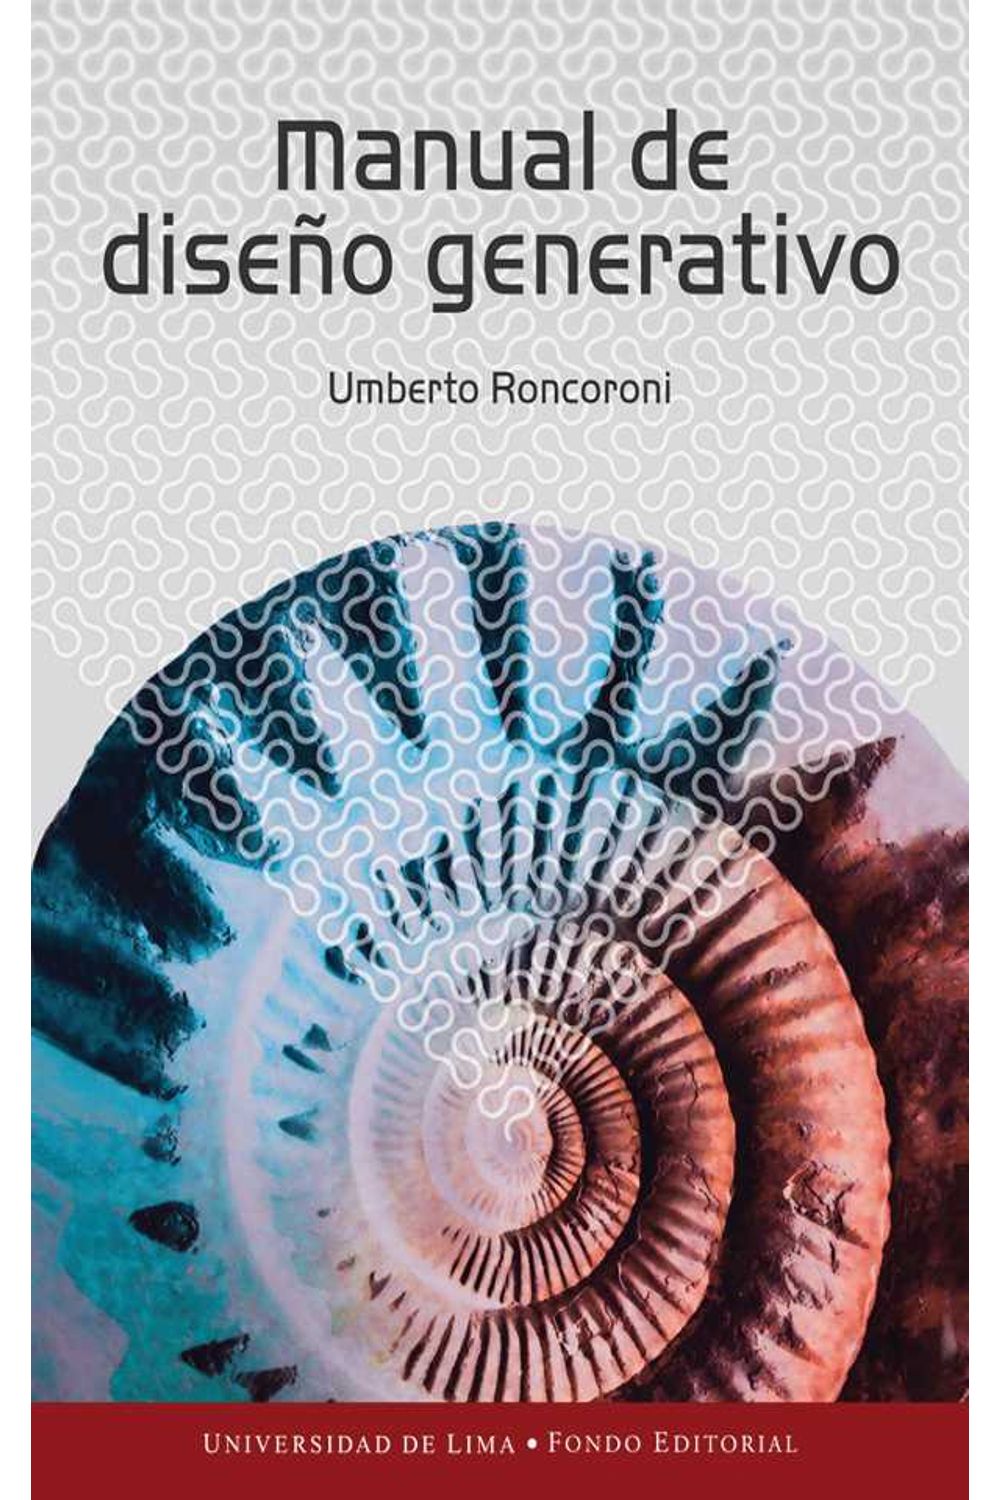 bw-manual-de-disentildeo-generativo-fondo-editorial-universidad-de-lima-9789972453601